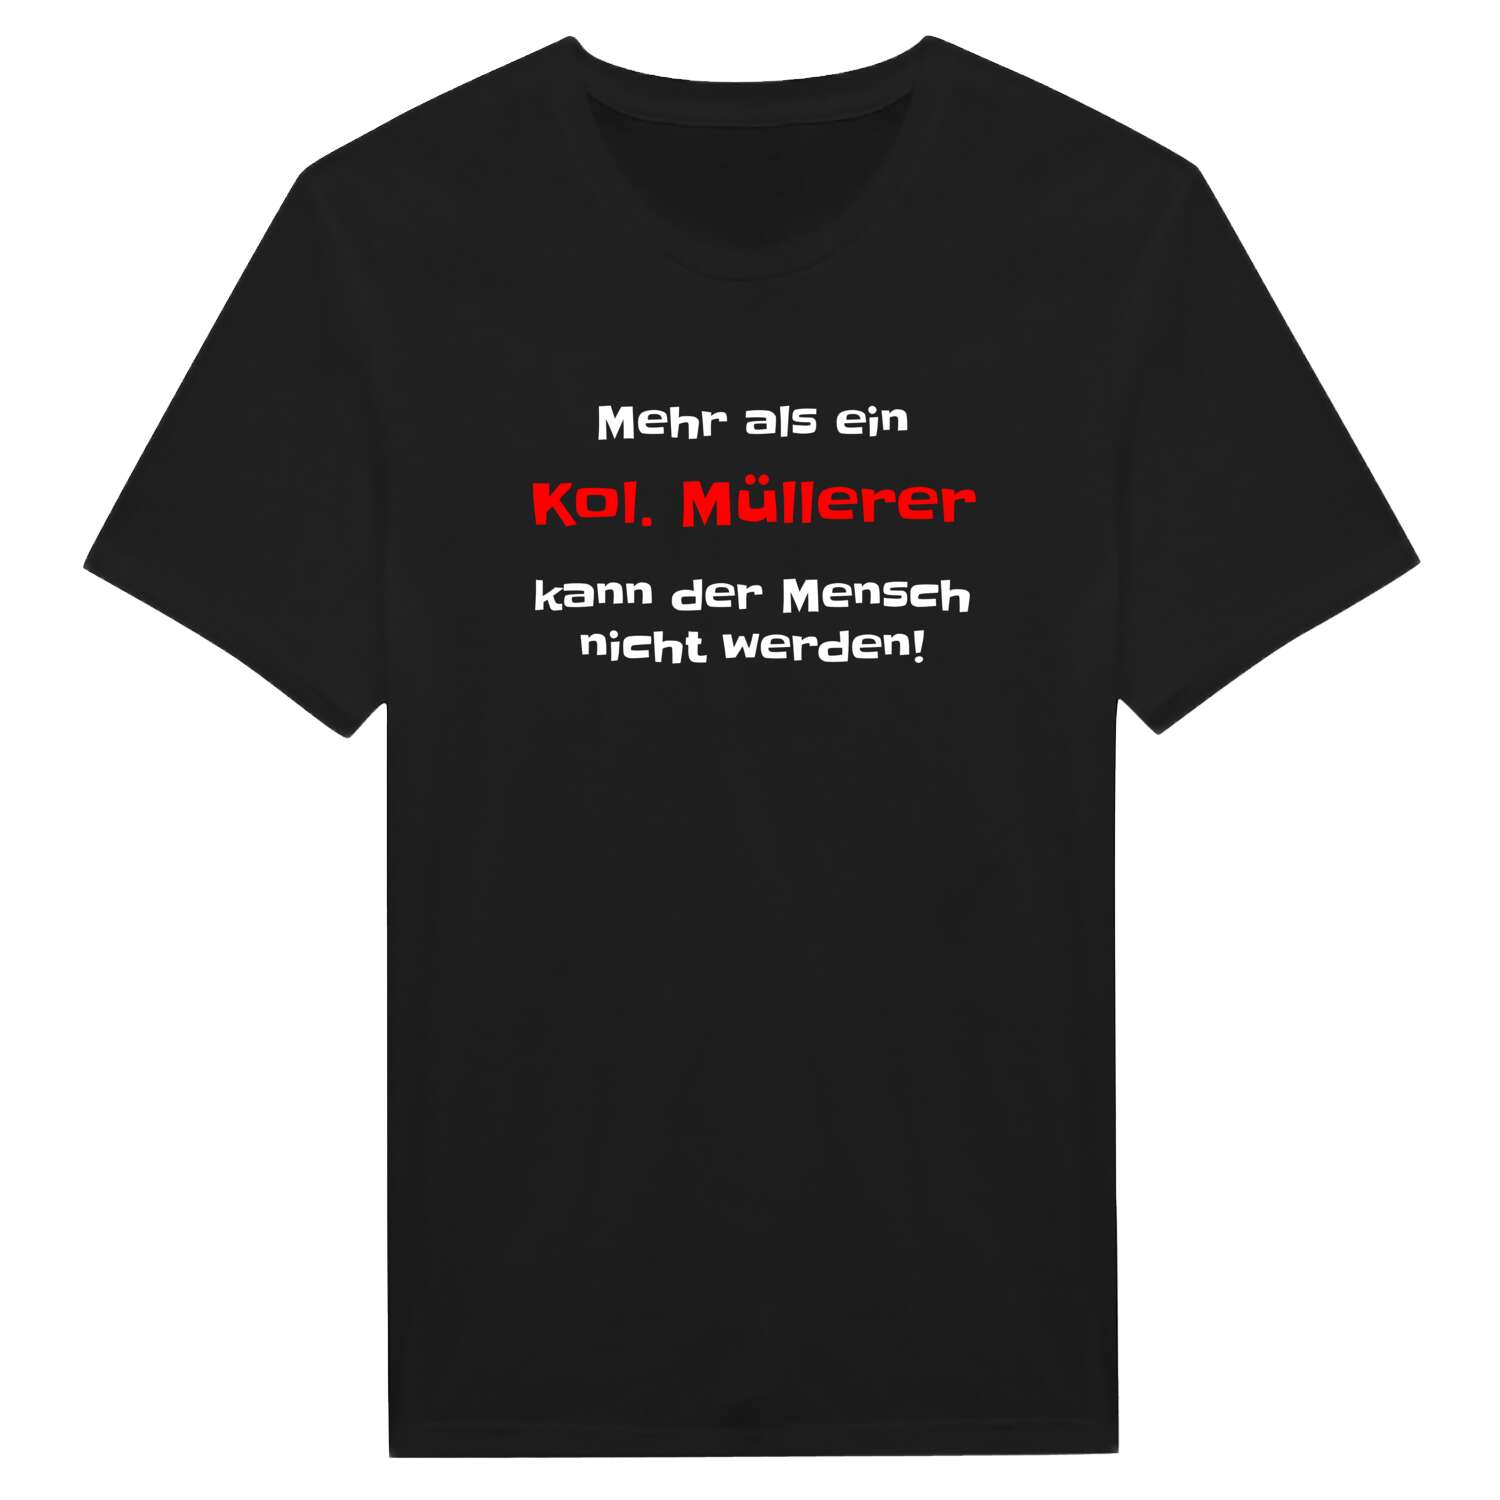 Kol. Müller T-Shirt »Mehr als ein«